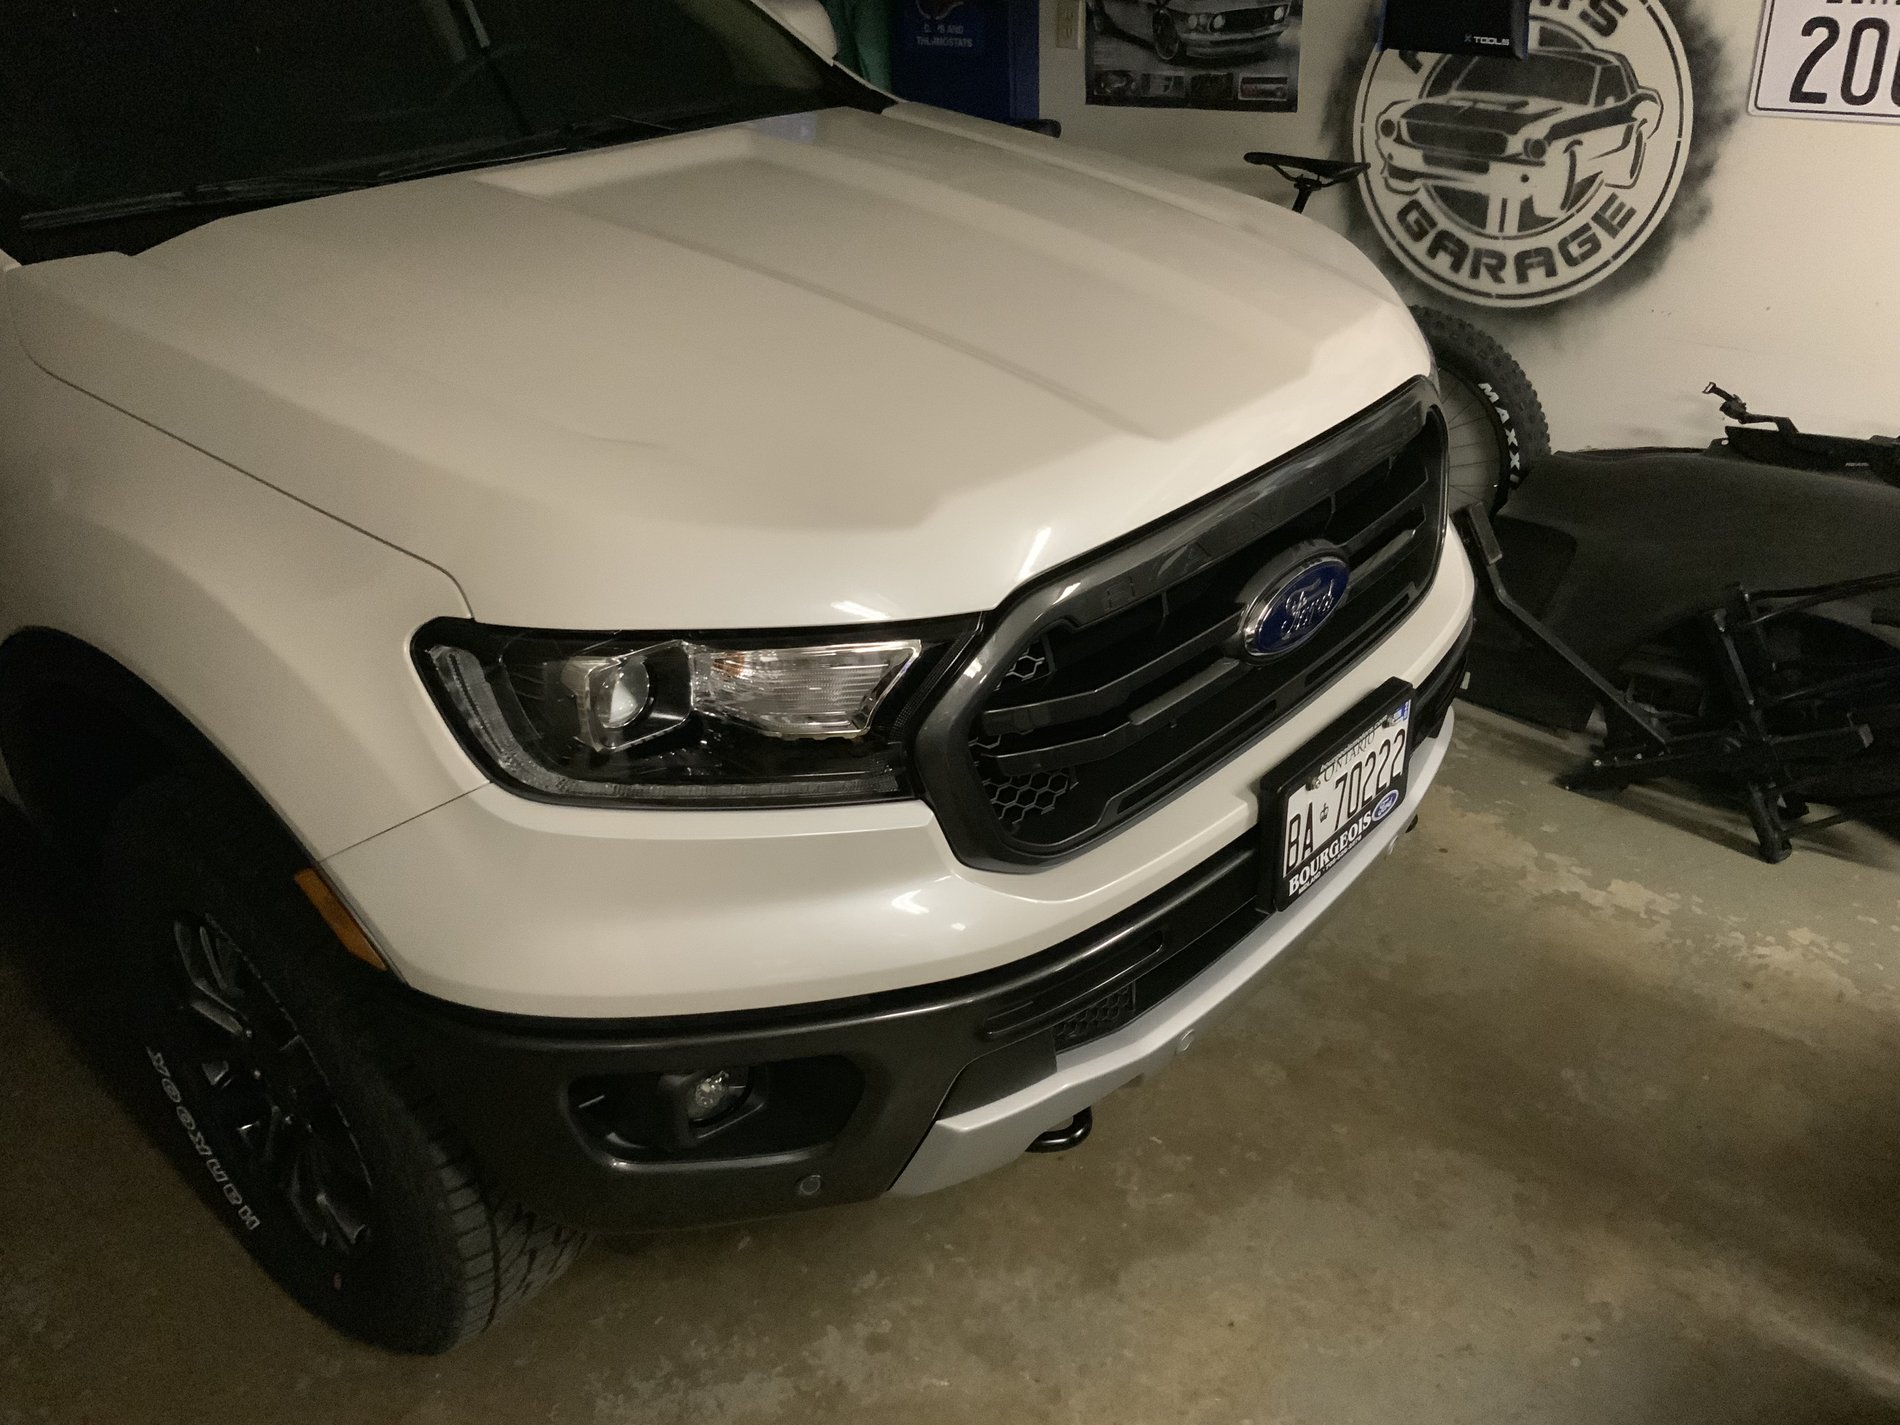 Ford Ranger FULLSCALE’s White Platinum Lariat FX4 C1CF9903-1273-4045-8012-779C7DB67933